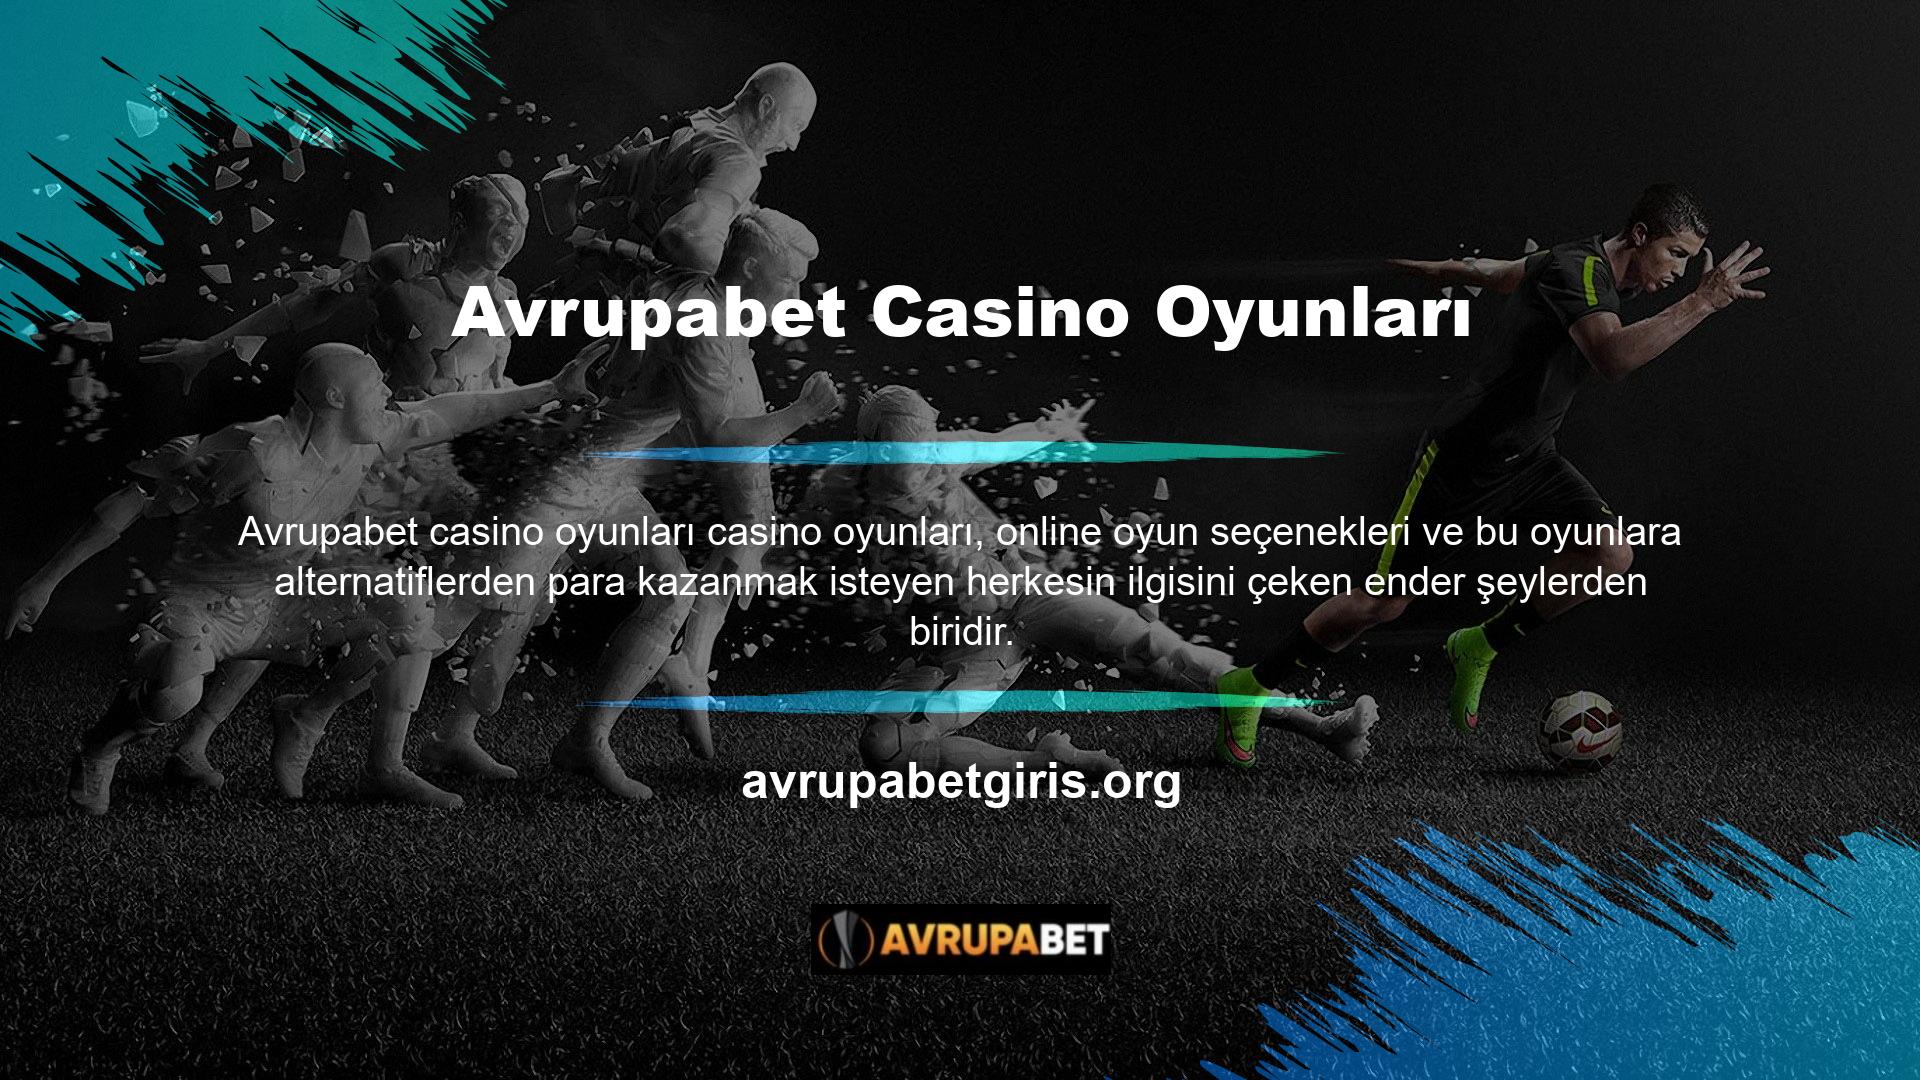 Avrupabet güncel giriş adresi 7/24 hizmet veren bir casino oyun sitesidir